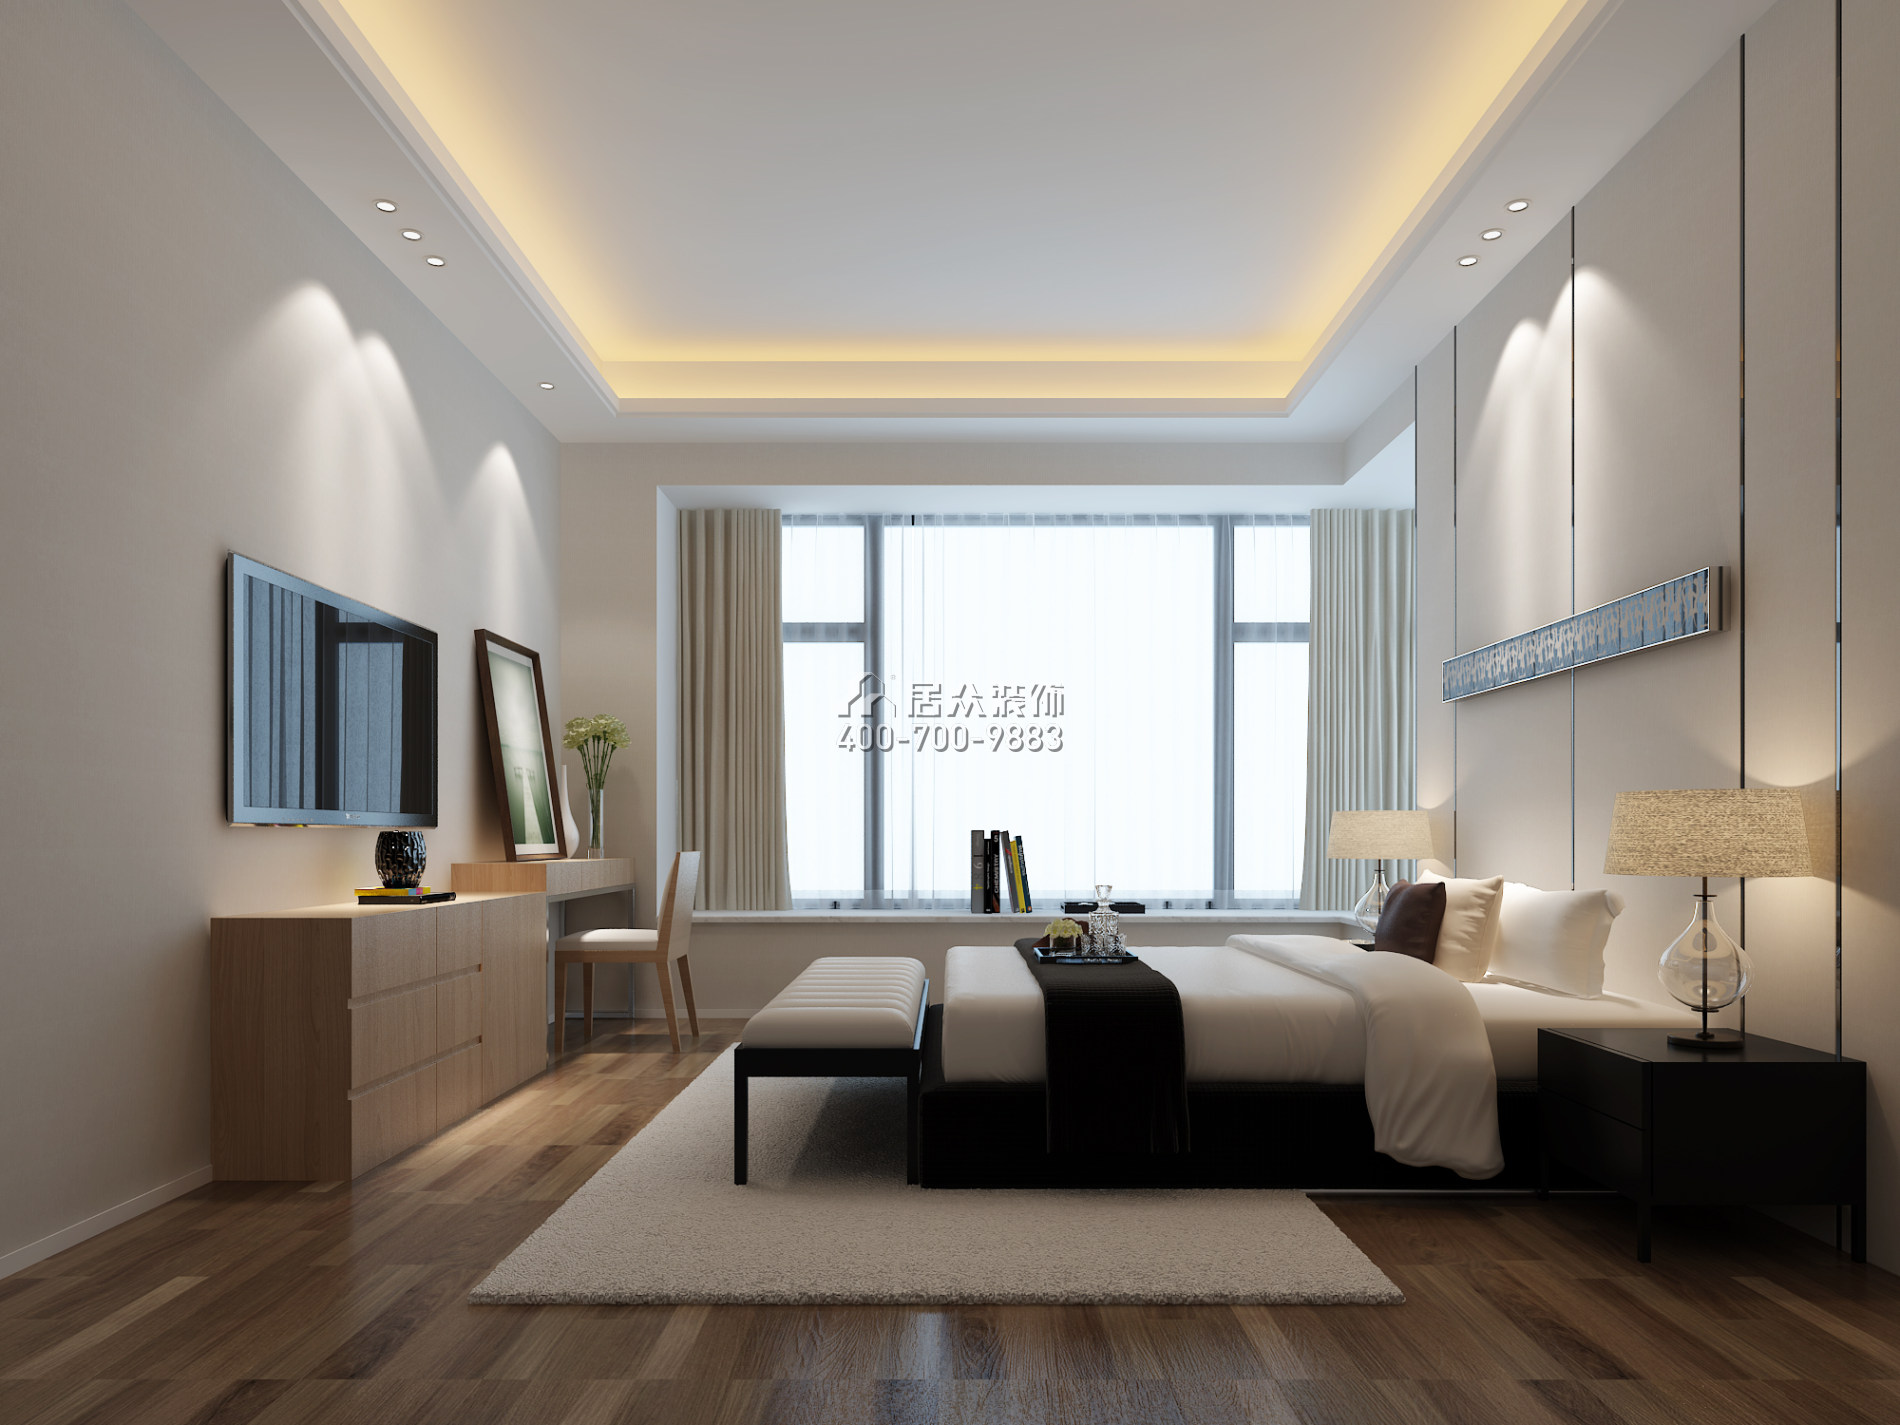 雅居乐富春山居182平方米现代简约风格平层户型卧室装修效果图